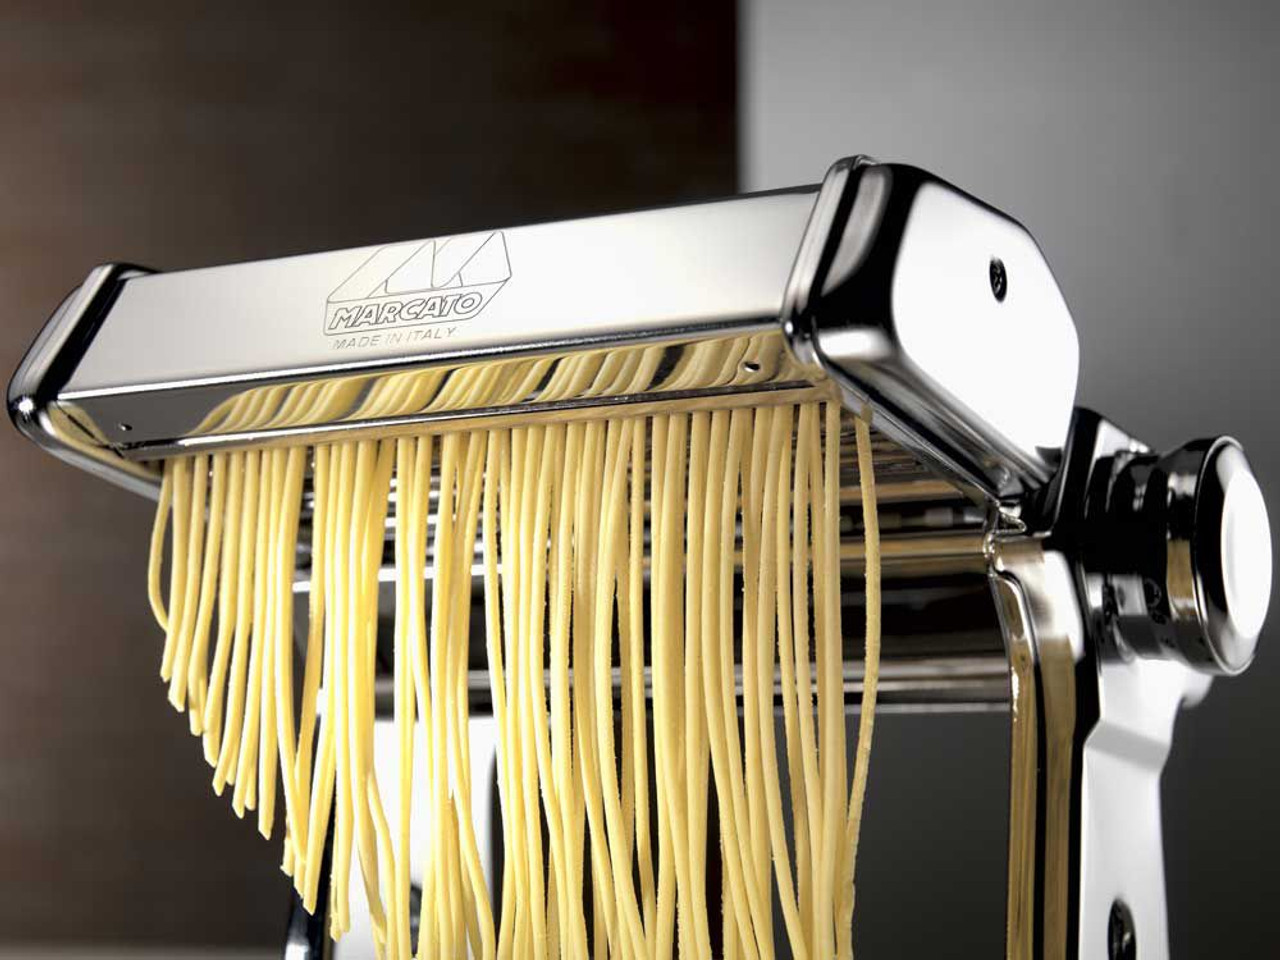 Marcato Atlas 150 Pasta Machine Attachment, Reginette - Fante's